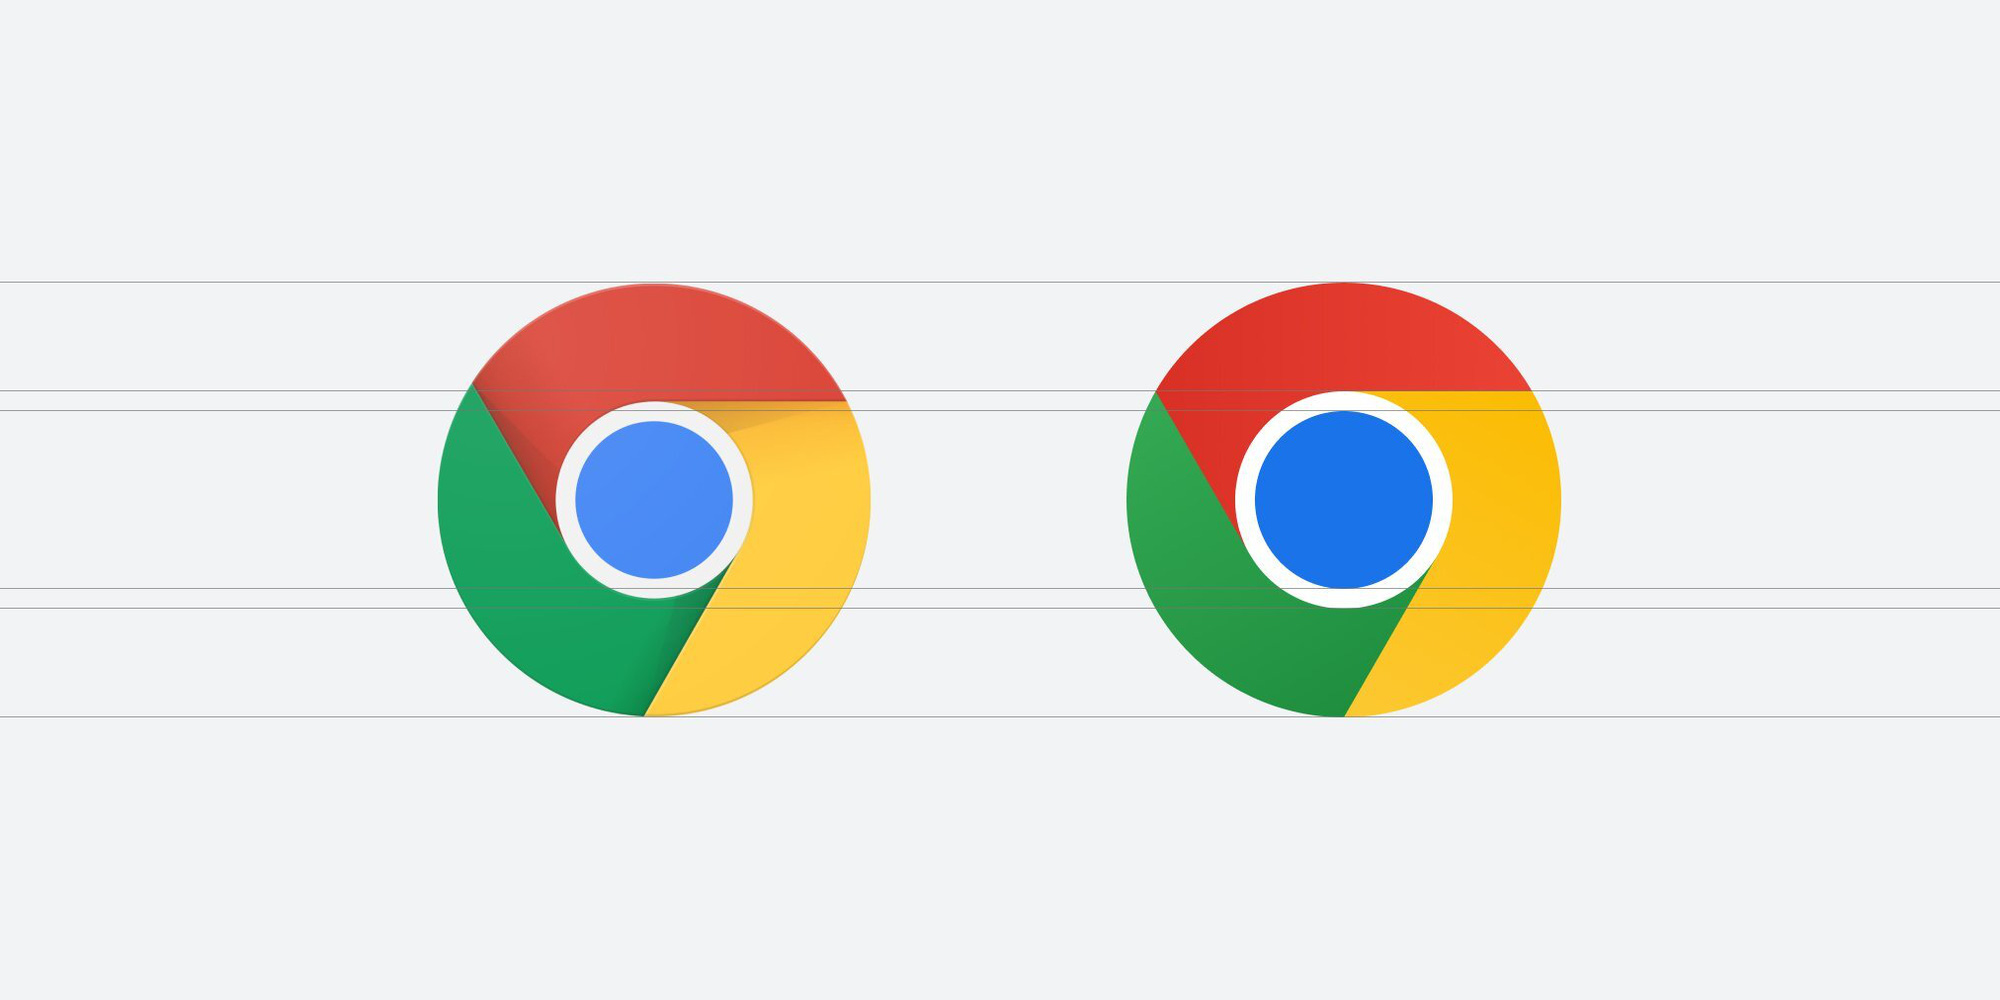 Bạn đã nghe tin Google Chrome đã có logo mới chưa? Đó là một bước đột phá đầy sáng tạo của Google trong việc cập nhật hình ảnh cho trình duyệt của mình. Nếu bạn là một người yêu công nghệ thì chắc chắn sẽ không muốn bỏ lỡ cơ hội chiêm ngưỡng logo mới tươi trẻ và đầy màu sắc này.